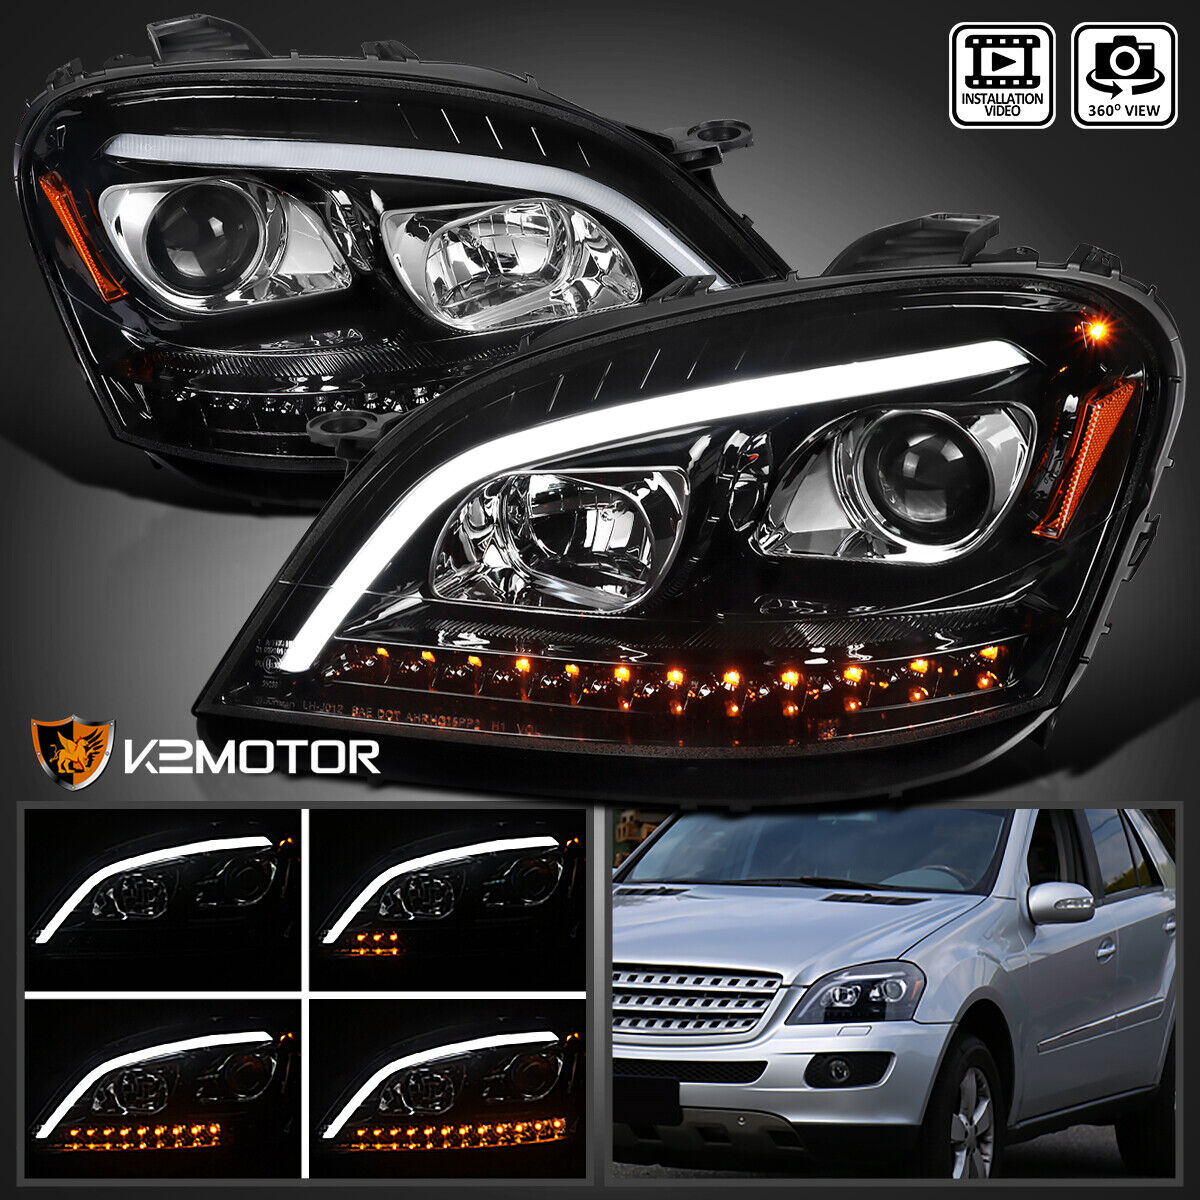 Jet Black Fits 2006-2008 Mercedes W164 ML350 ML500 LED Bar Projector Headlights